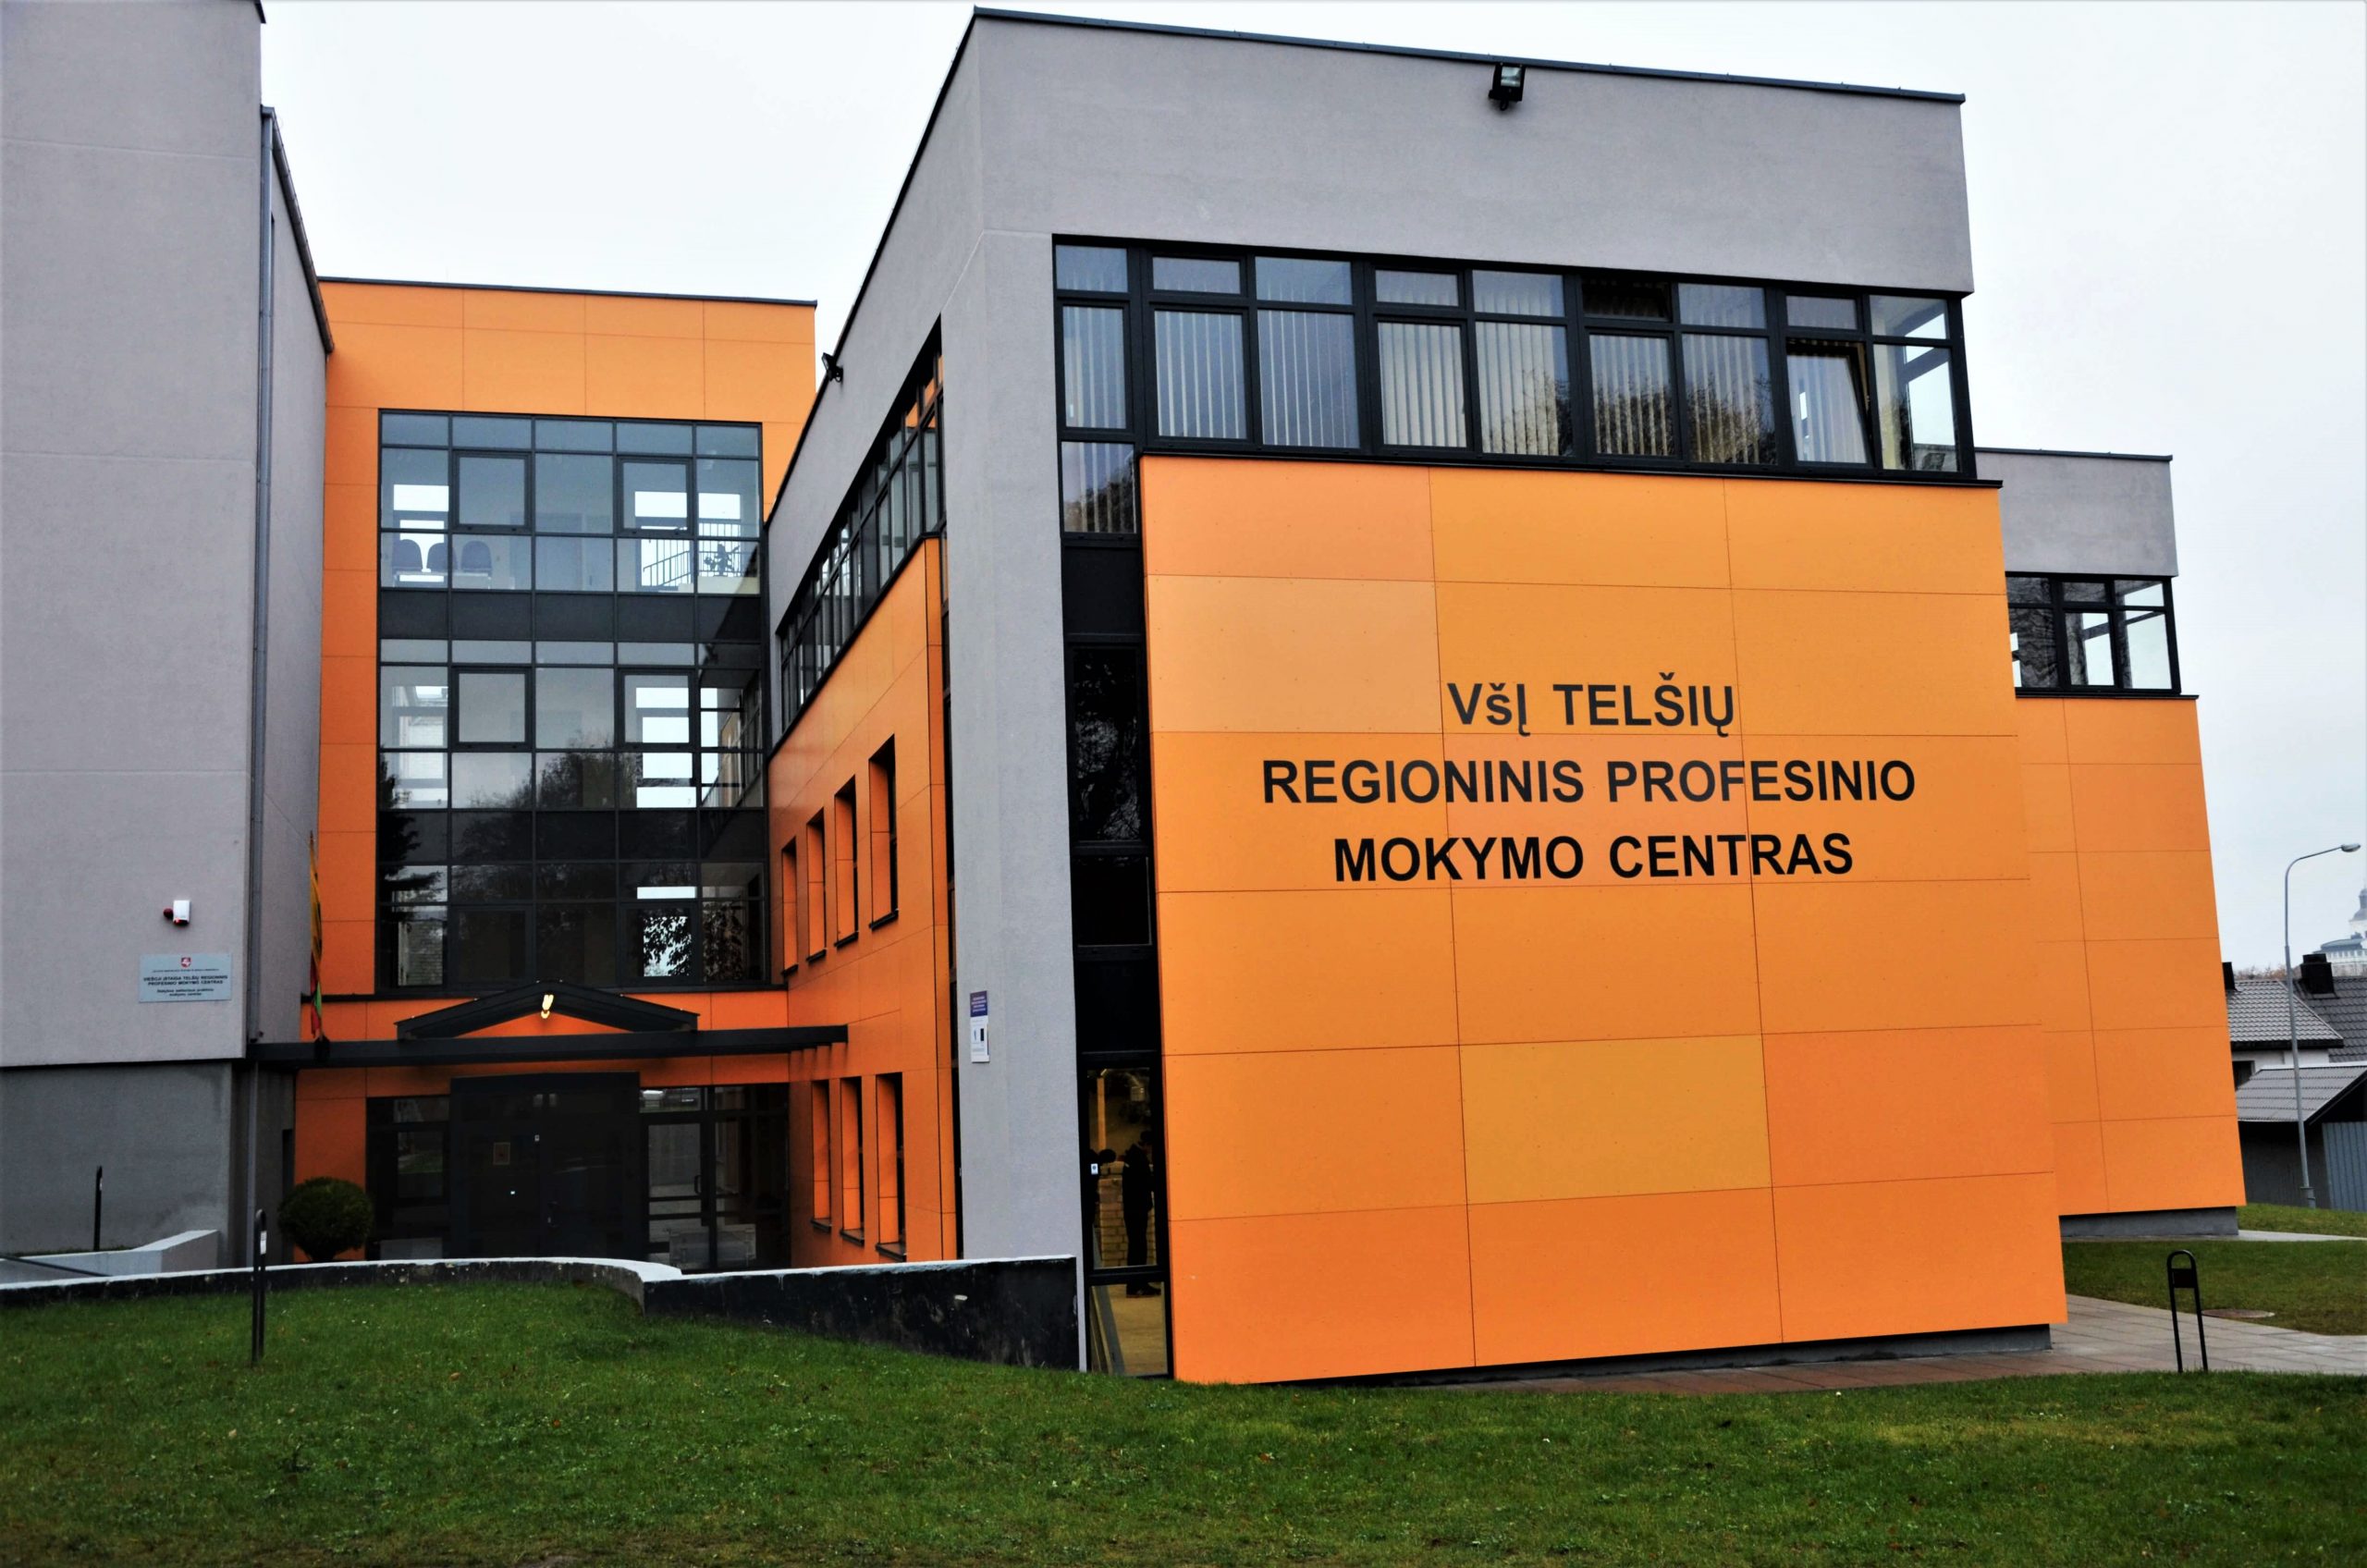 Telšių regioninis profesinio mokymo centras